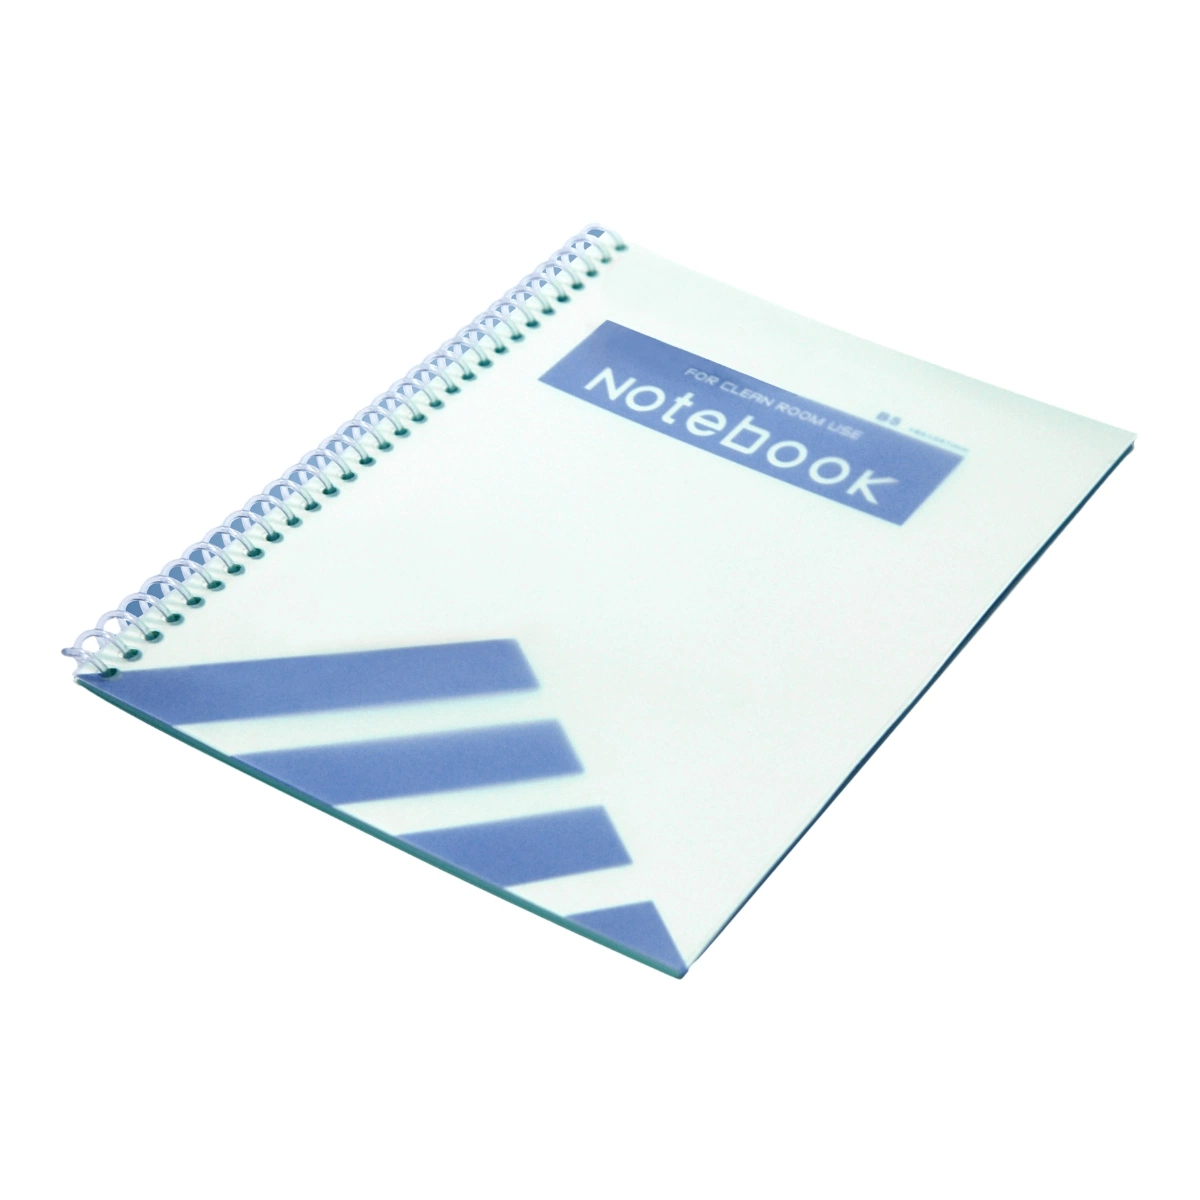 Cahier de notes A4 sans rebut pour salles blanches industrielles pour l'industrie